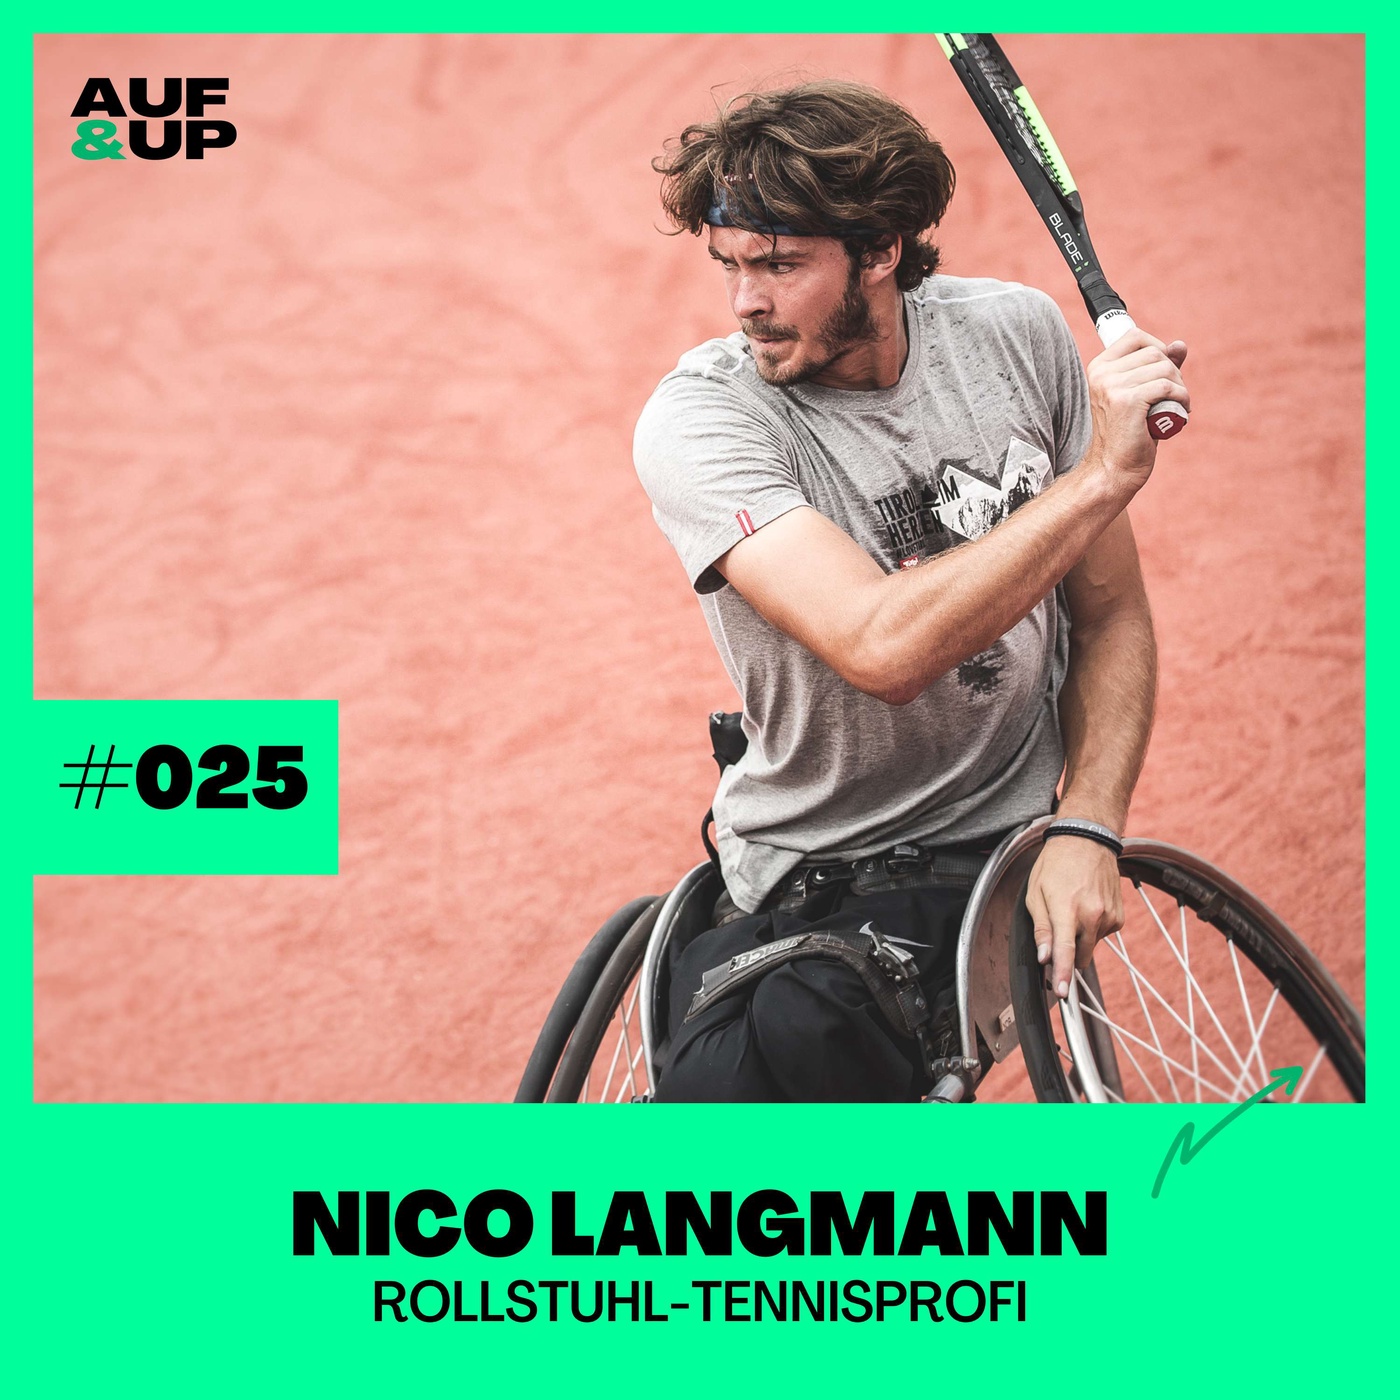 Rollstuhl-Tennisprofi Nico Langmann - wie ich meinen Traum aufgab, um mein Leben zu gewinnen | A&U #025